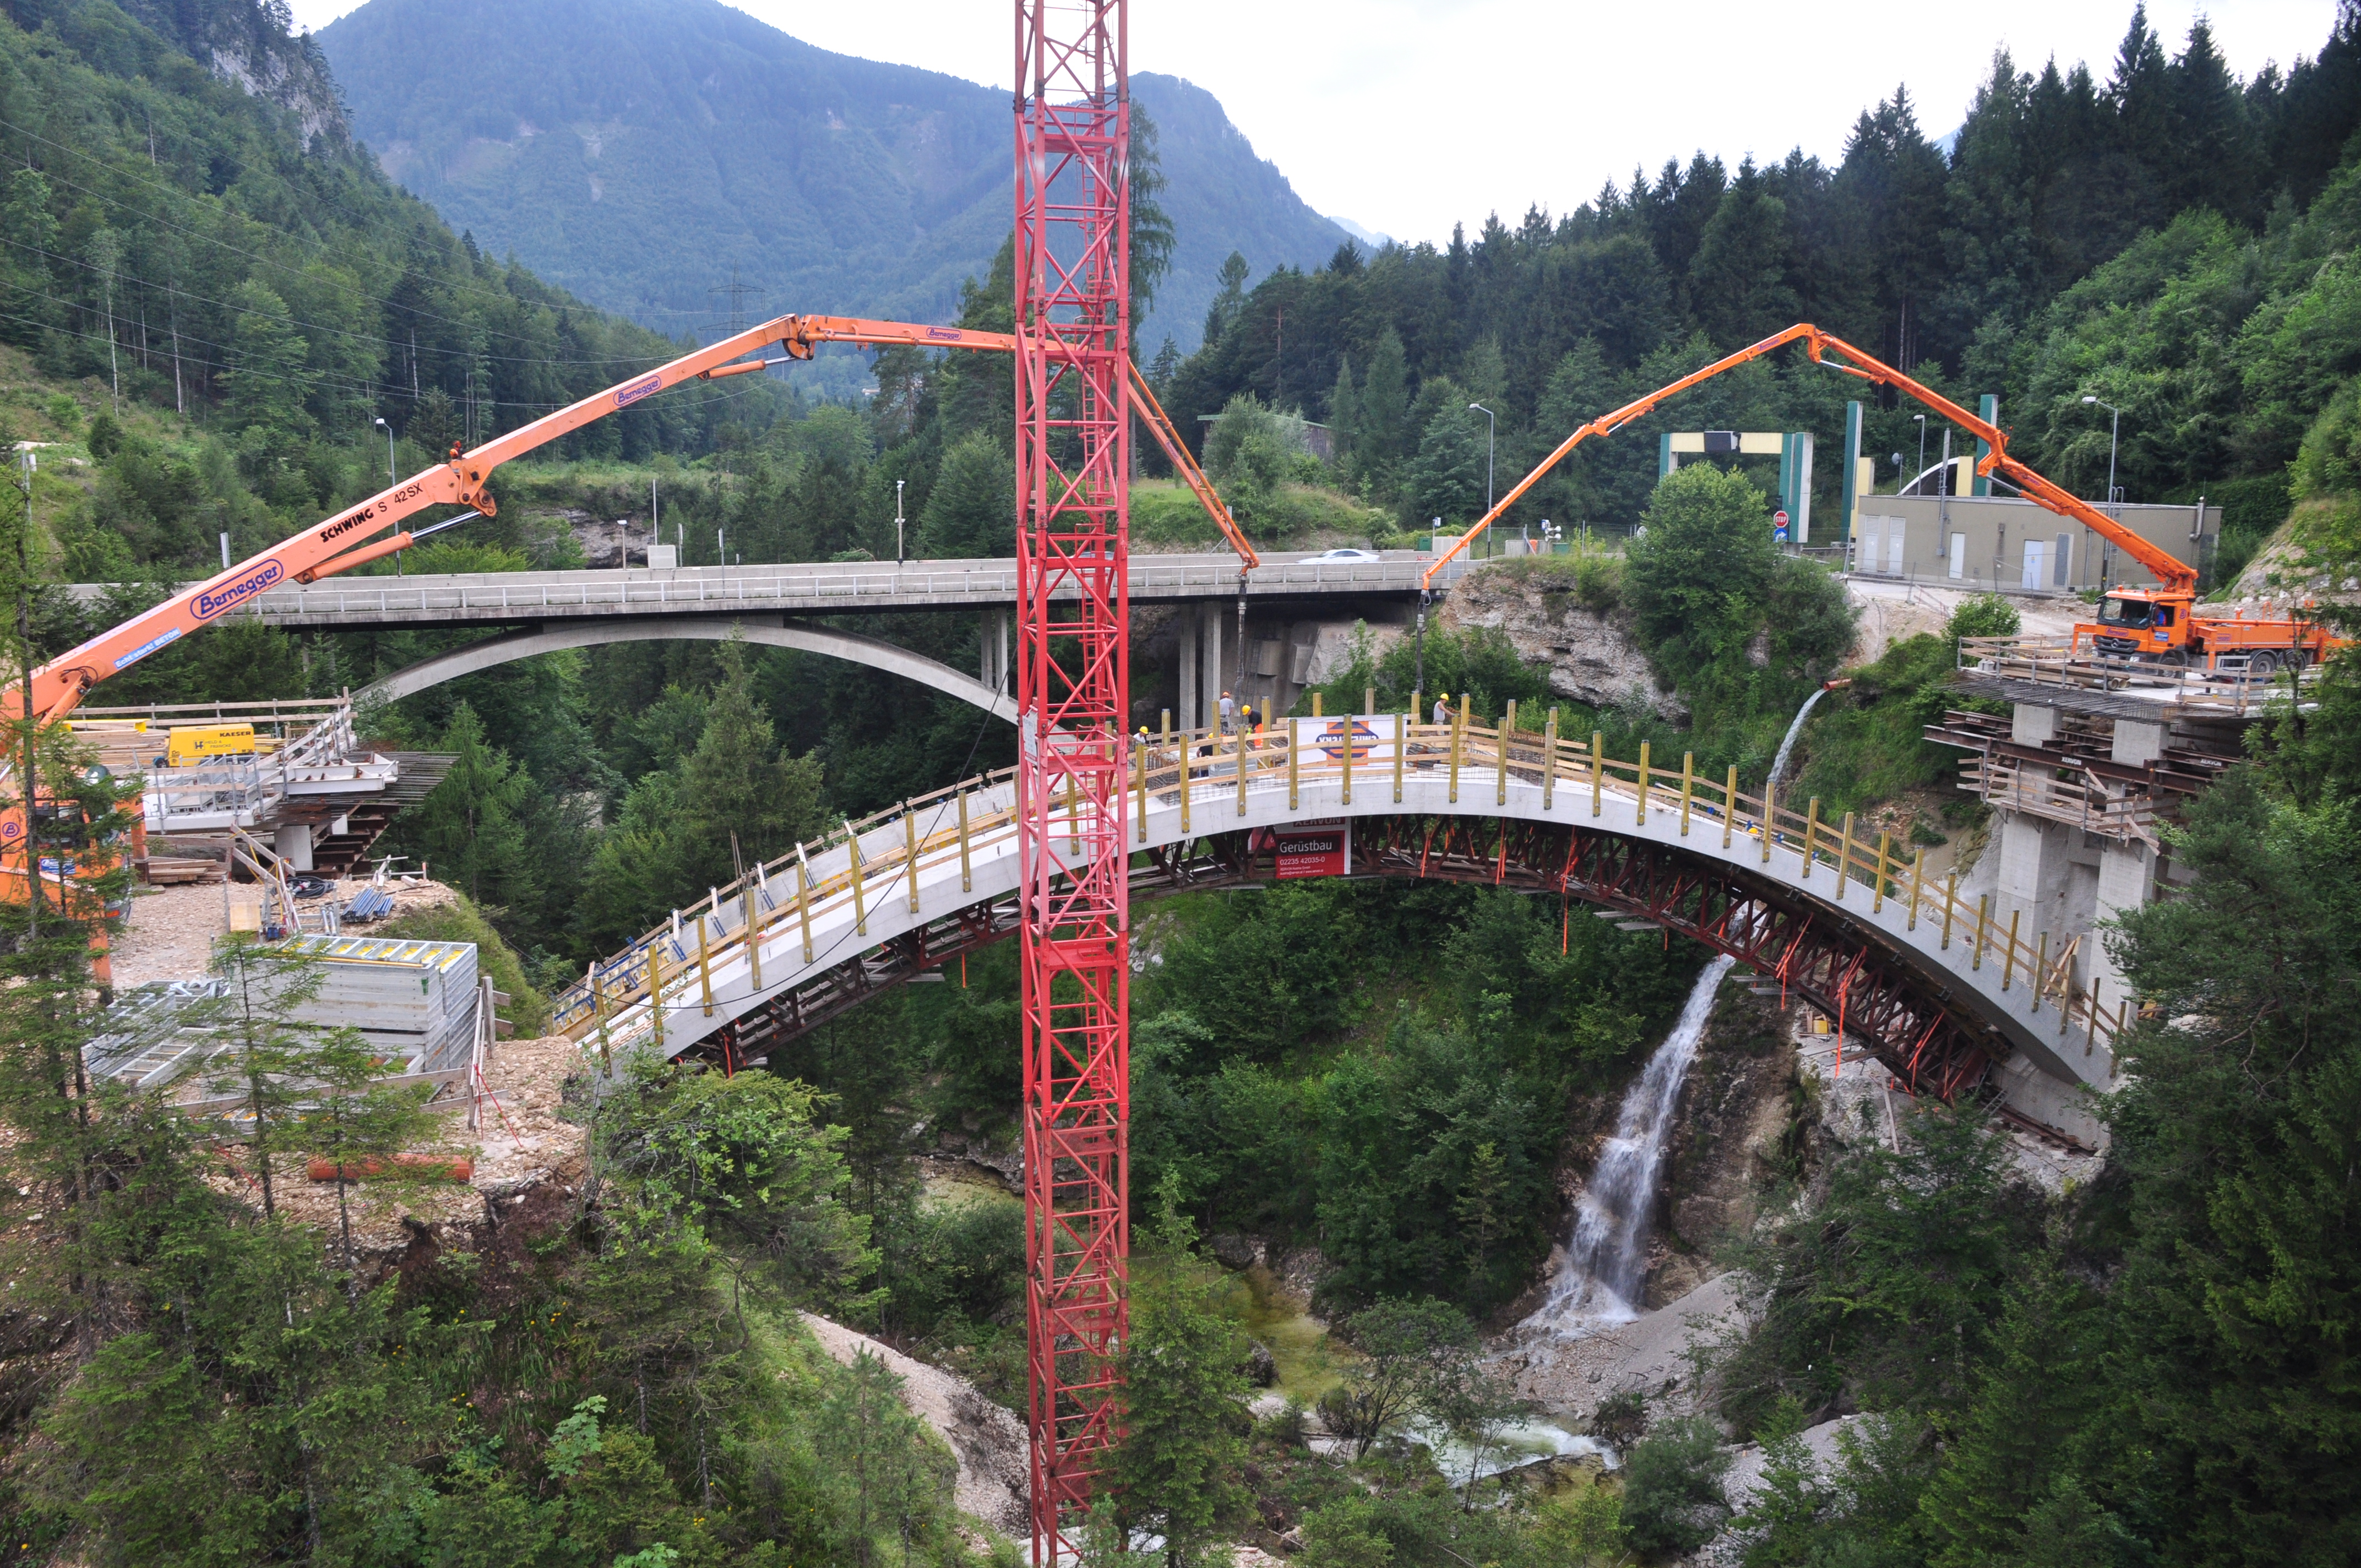 A9 Teichlbrücke - Izgradnja cesta i mostova